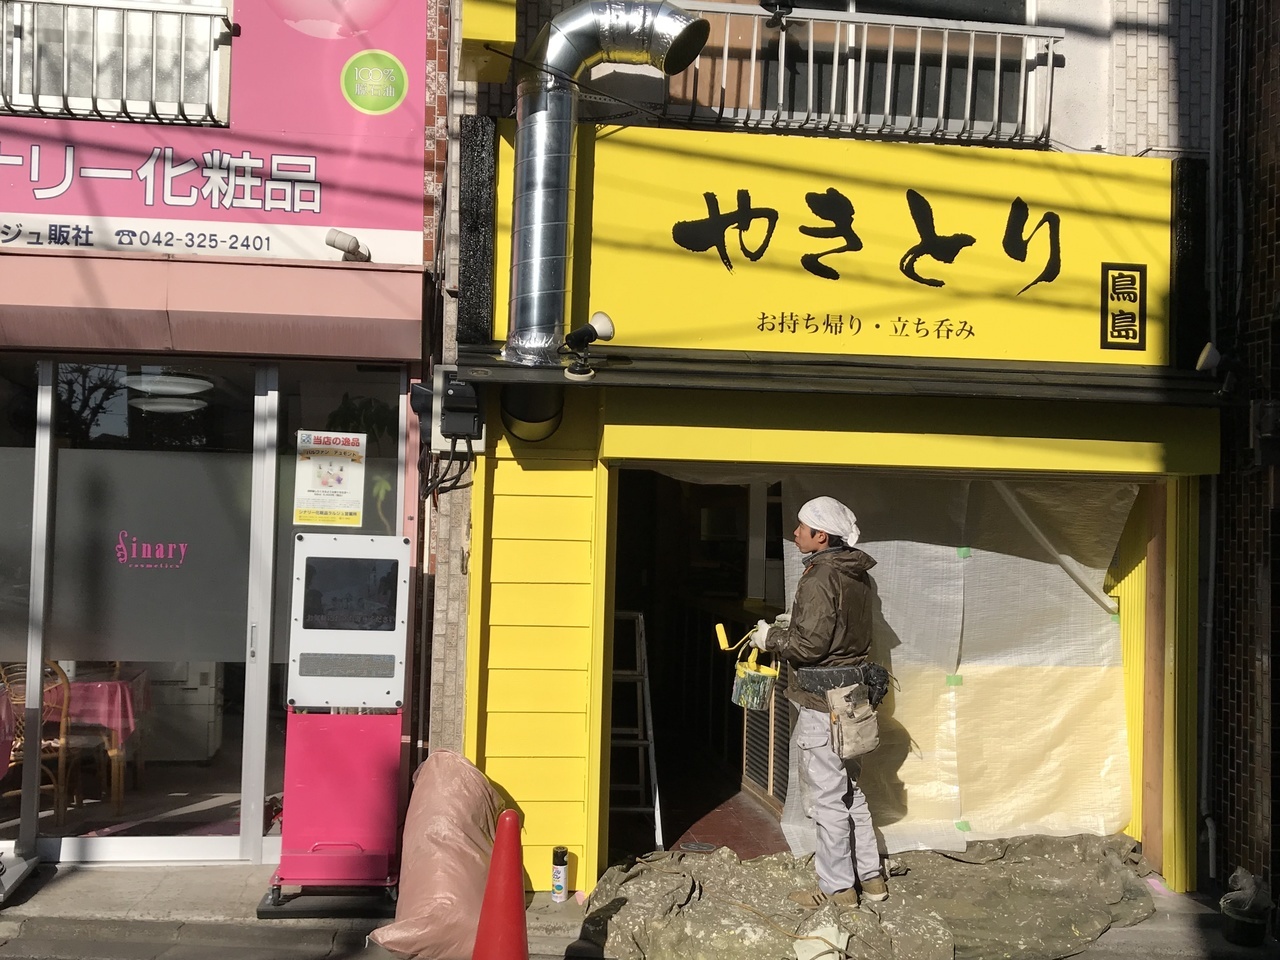 小平市花小金井の工務店リフォームワークスが手がけた店舗改装工事です。